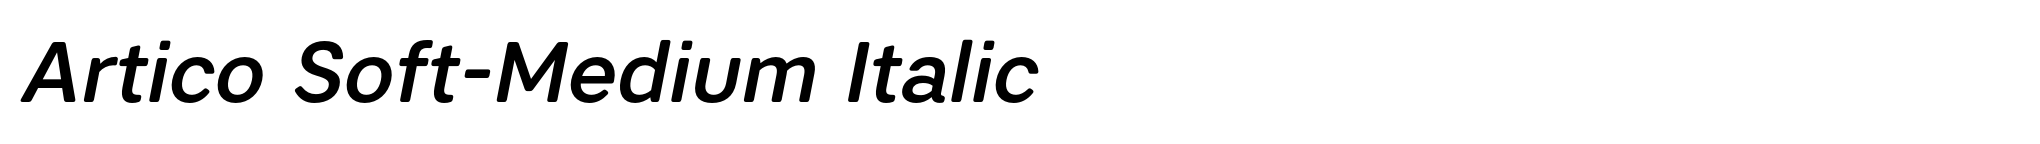 Artico Soft-Medium Italic image